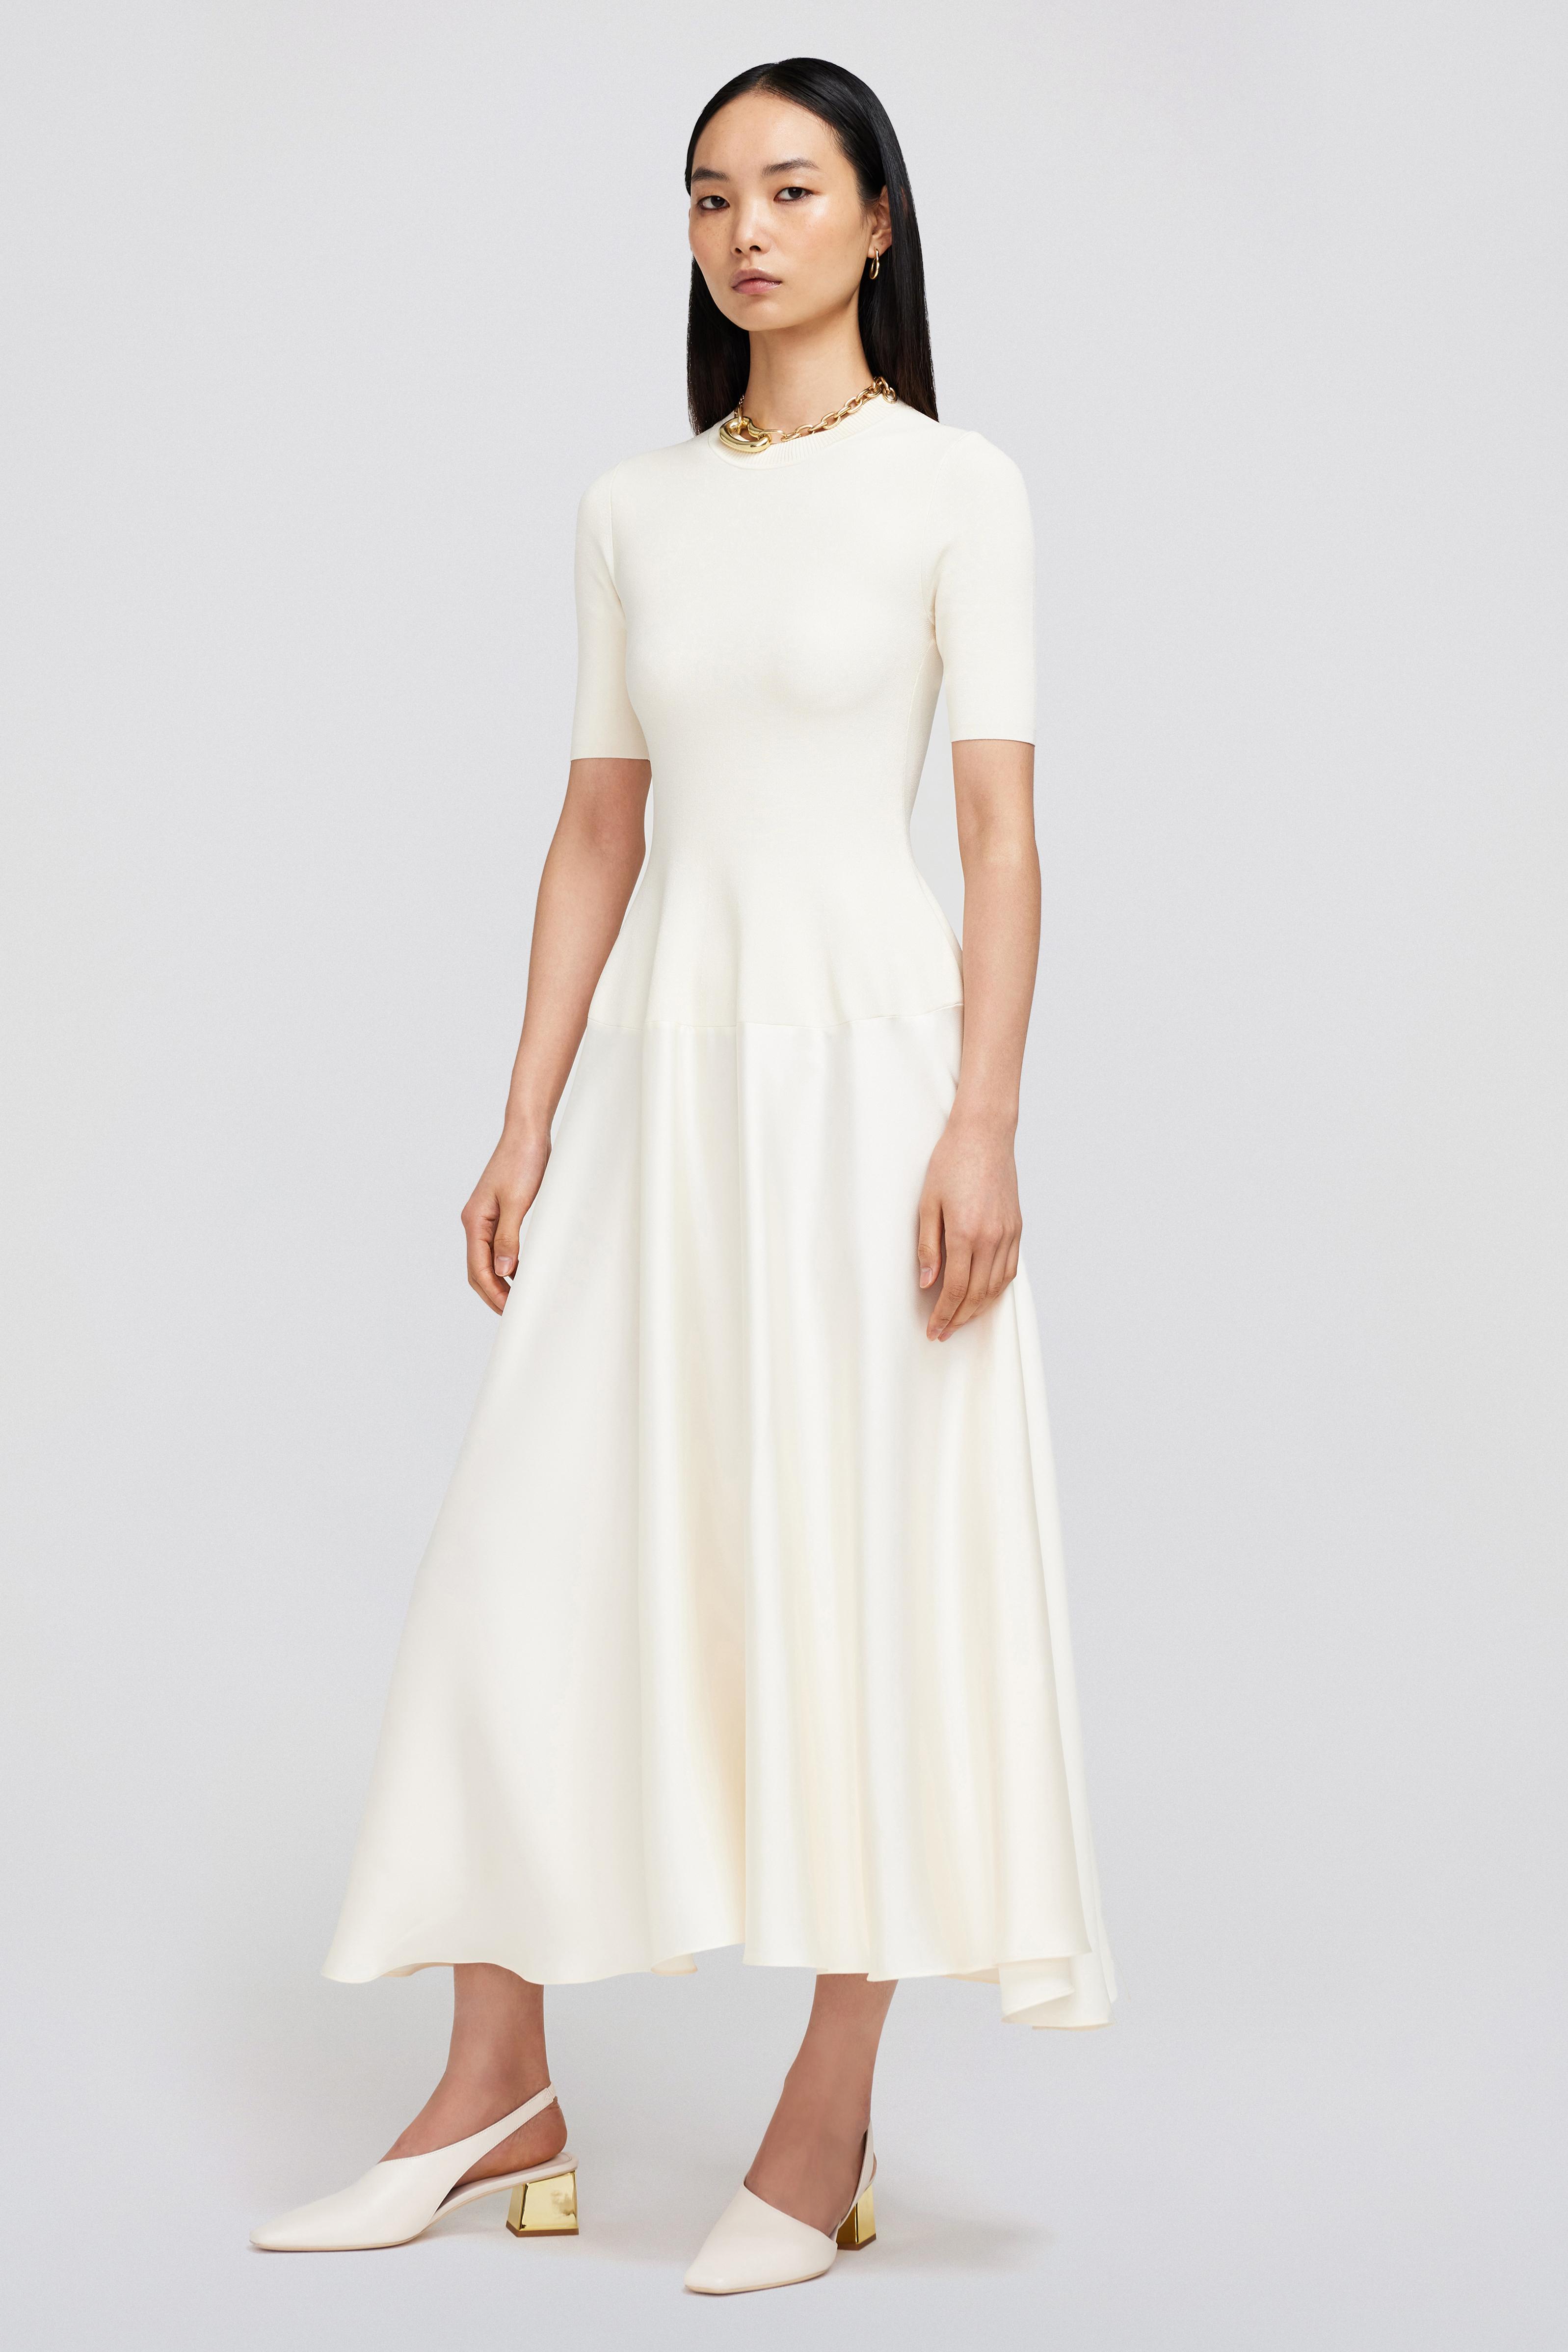 Marionne Dress – SIMKHAI